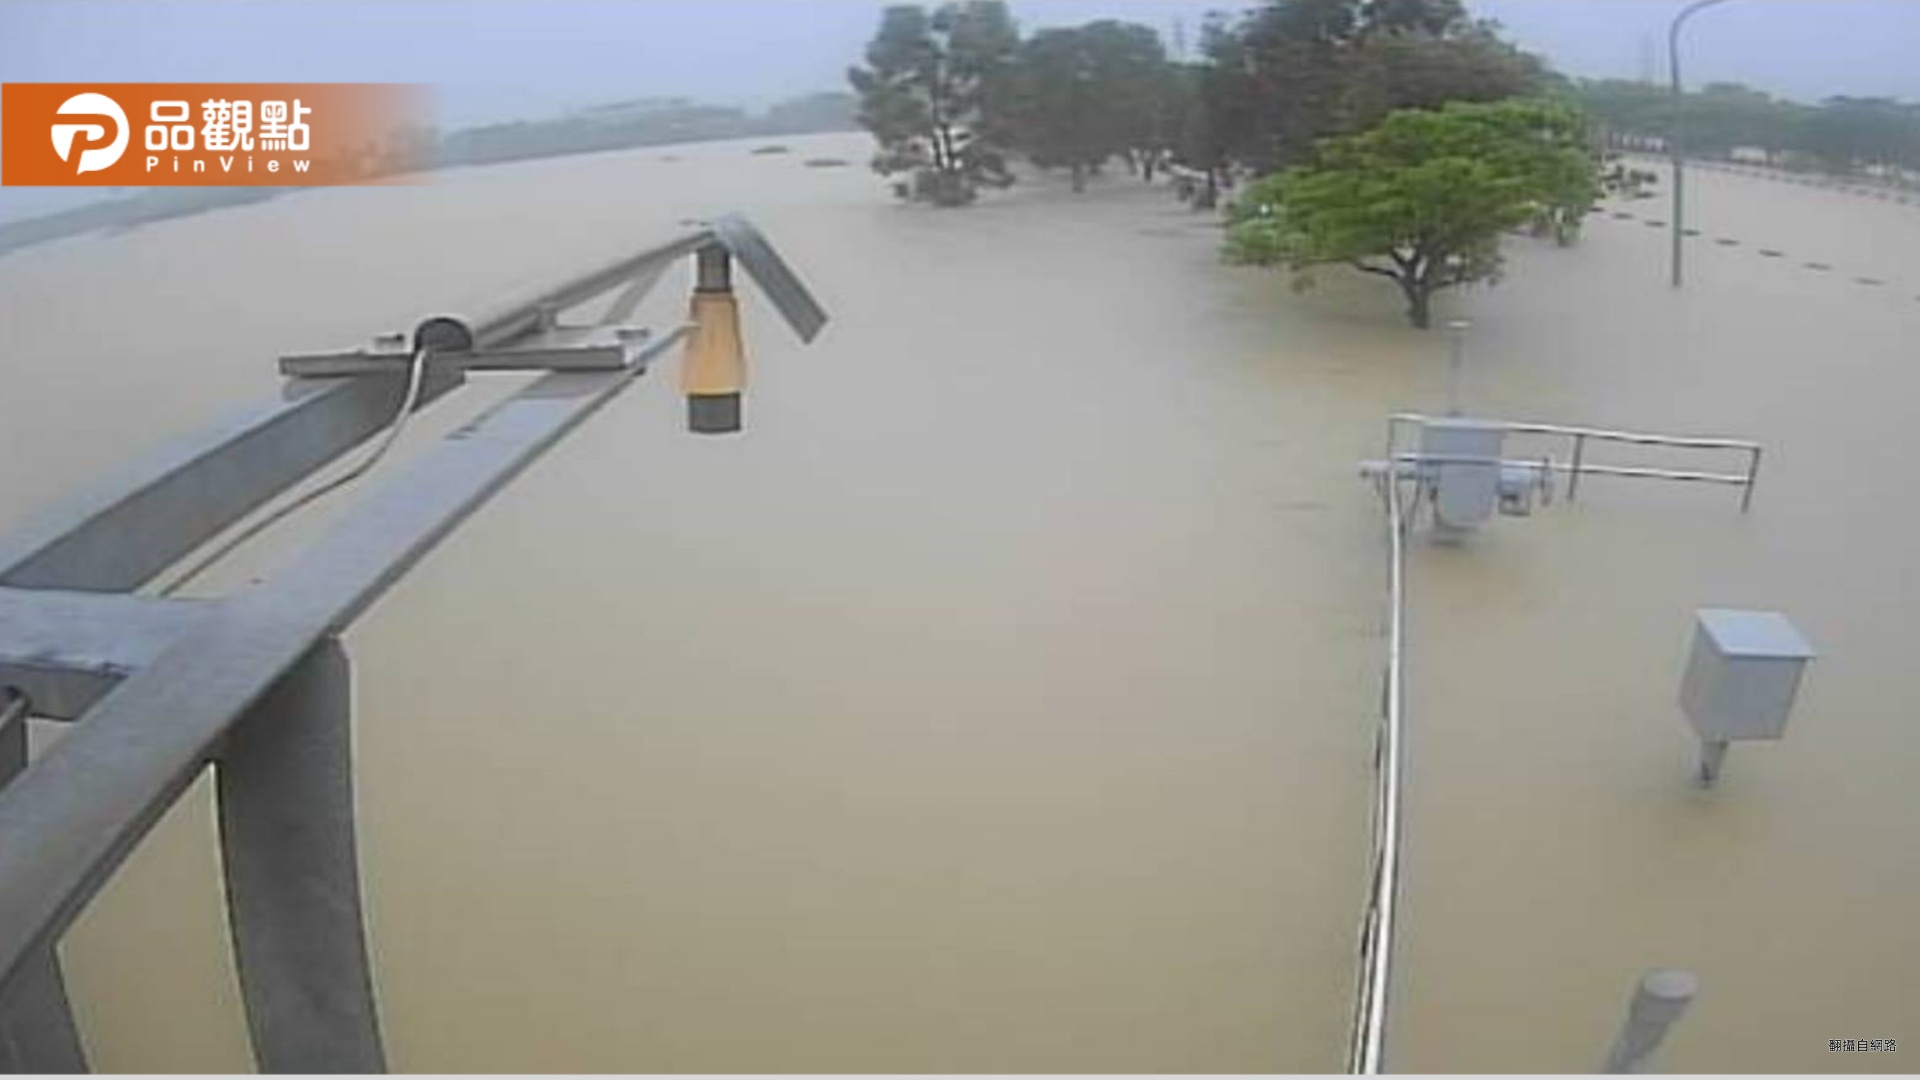 凱米單日雨量超越莫拉克 高雄滯洪池總容量490萬噸全灌滿